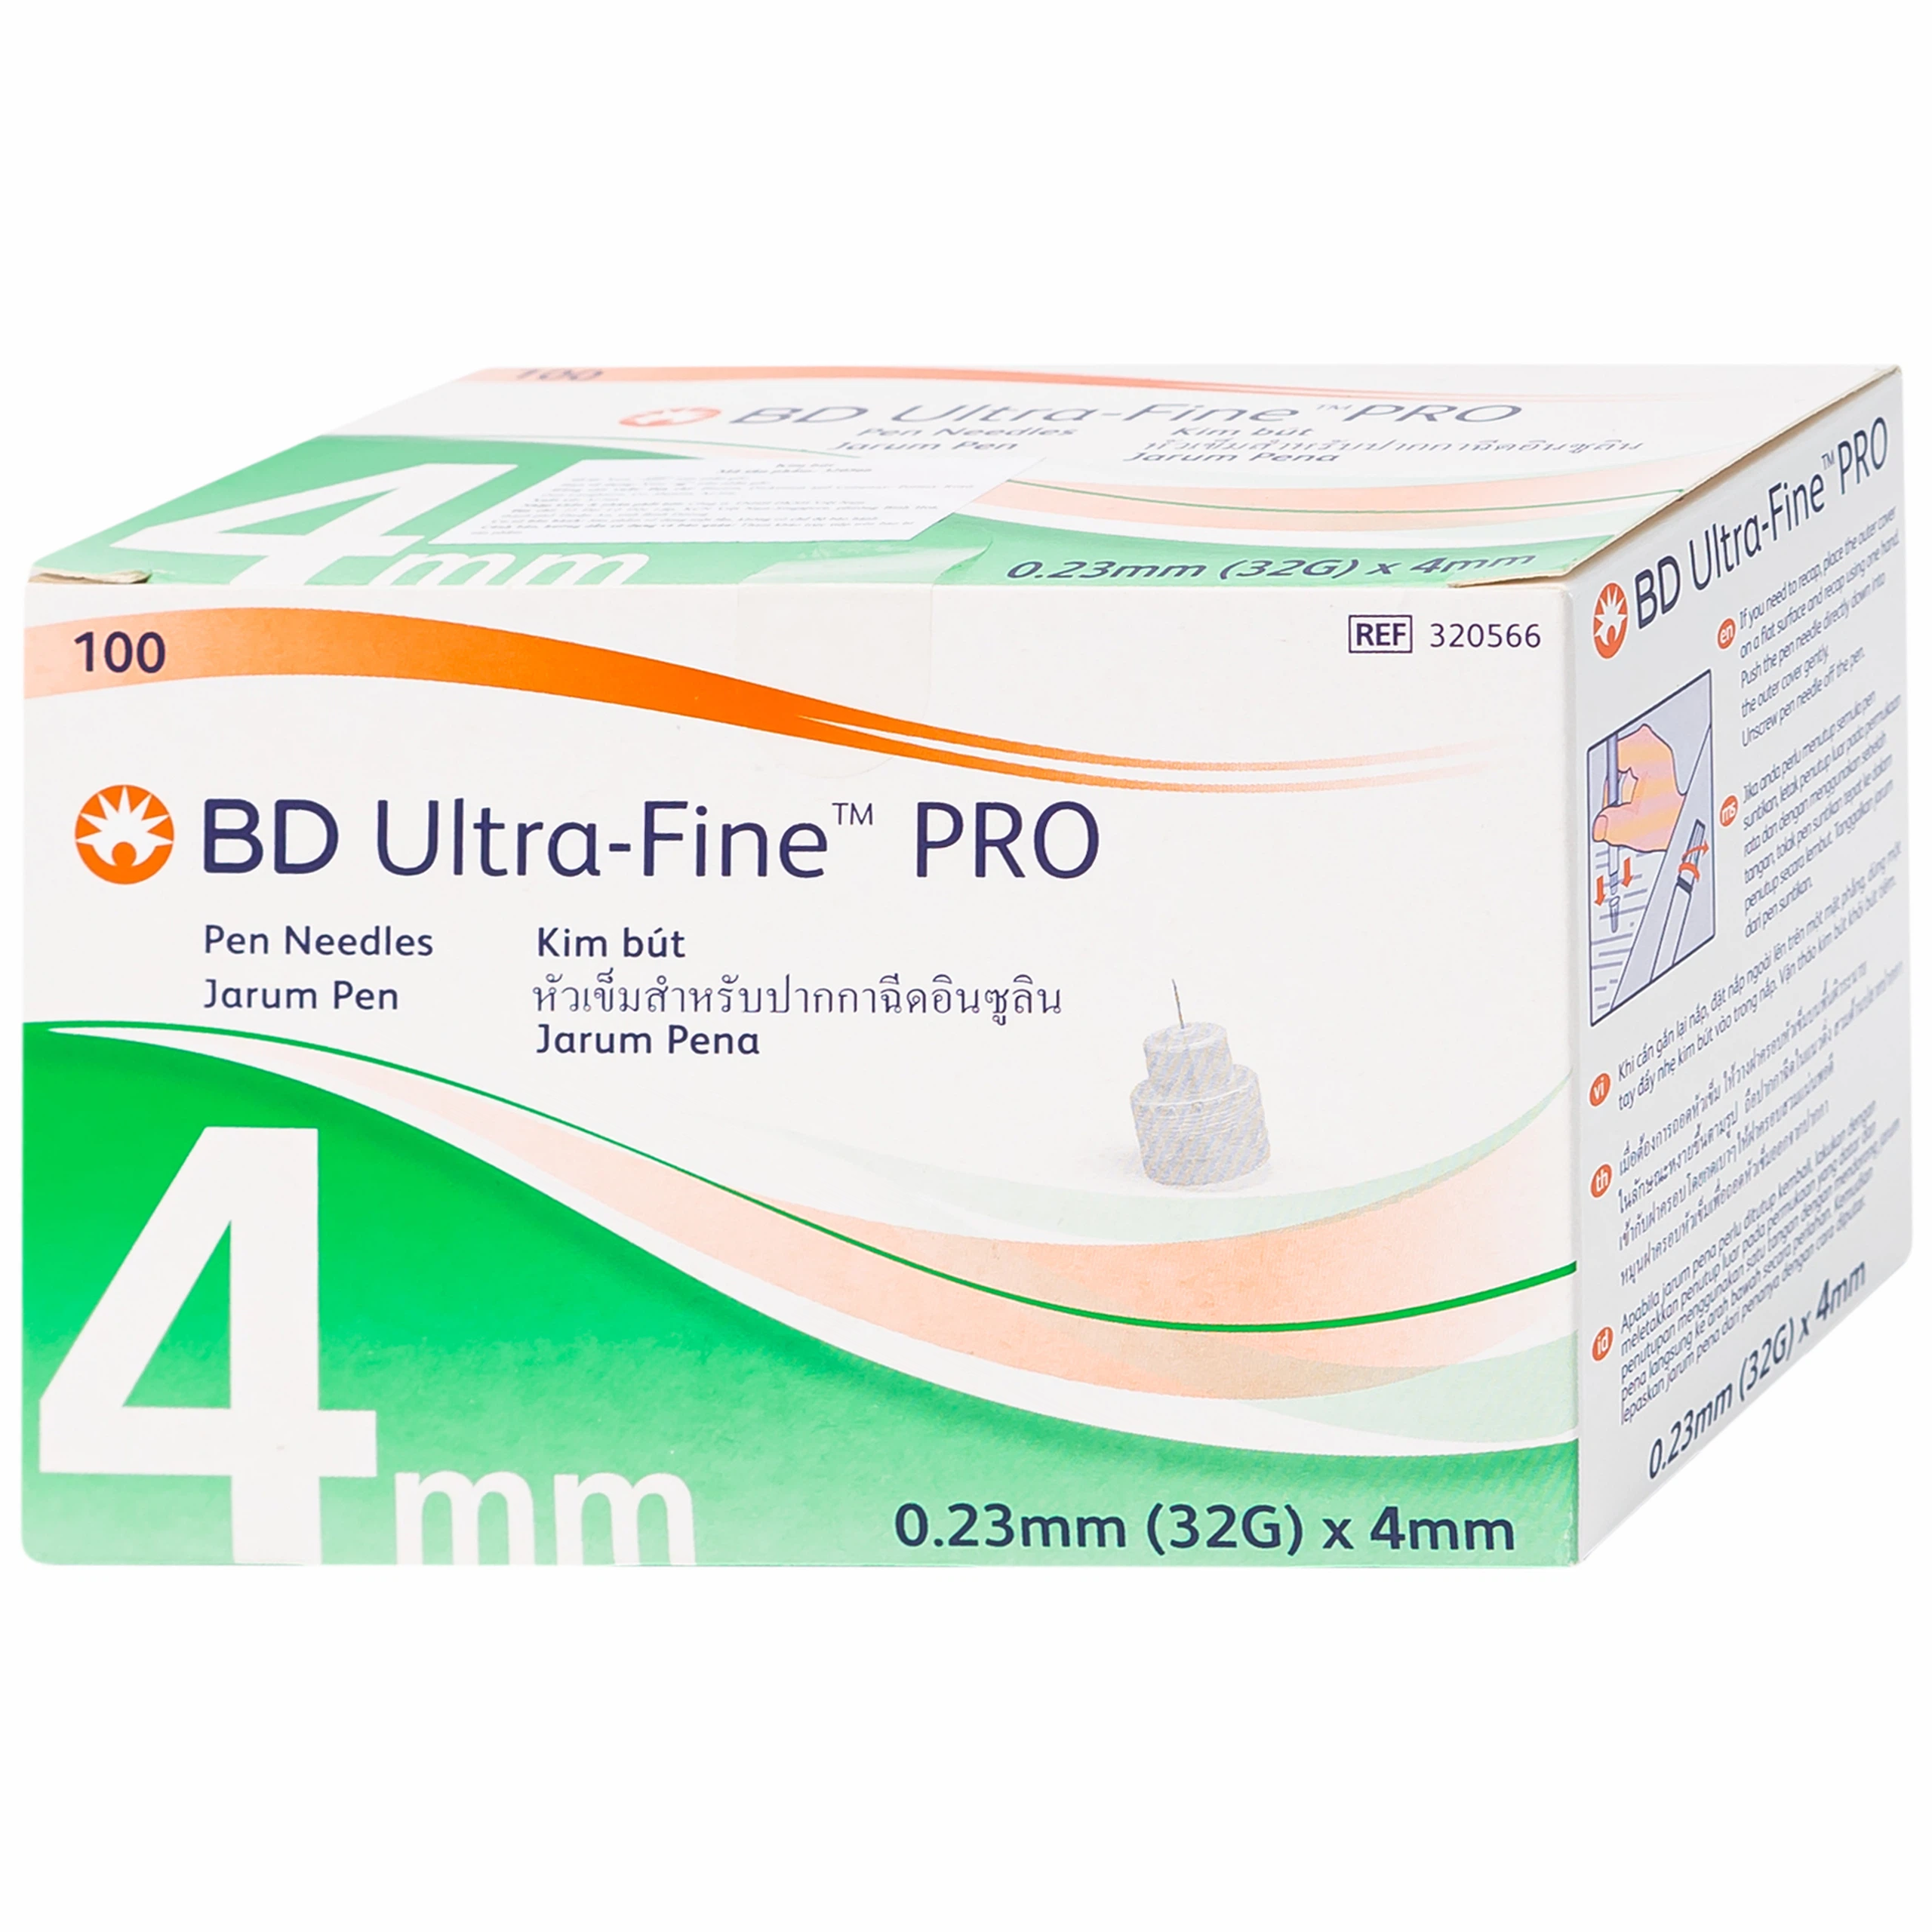 Kim bút BD Ultra - Fine Pro (4mm x 32g) xuyên qua da dễ dàng, không gây đau đớn khi tiêm (100 cây)